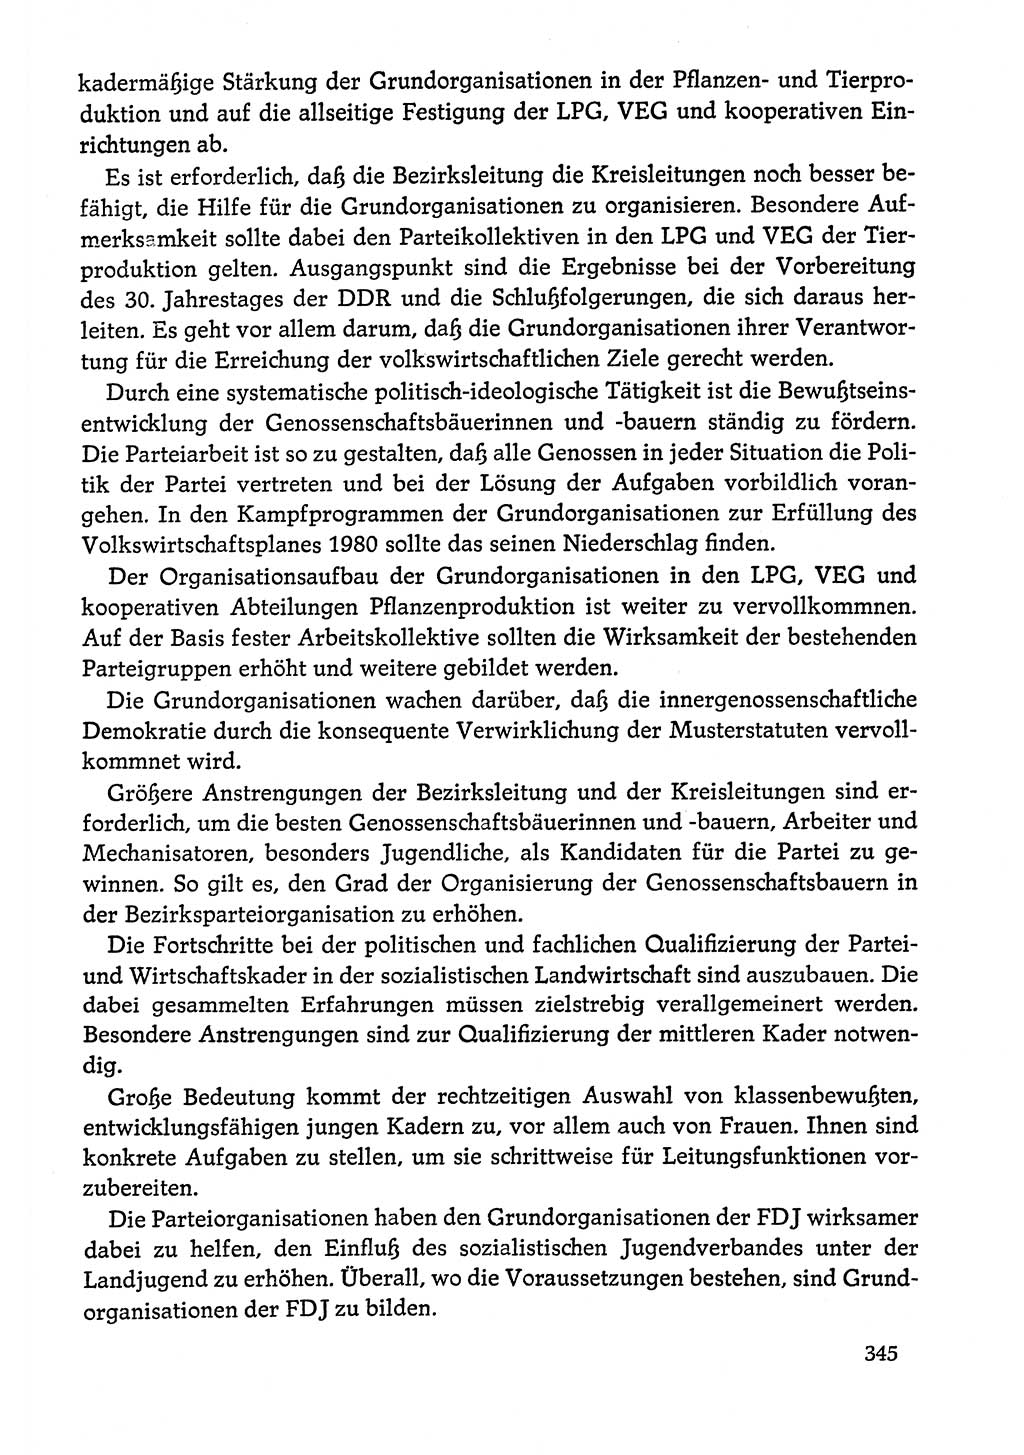 Dokumente der Sozialistischen Einheitspartei Deutschlands (SED) [Deutsche Demokratische Republik (DDR)] 1978-1979, Seite 345 (Dok. SED DDR 1978-1979, S. 345)